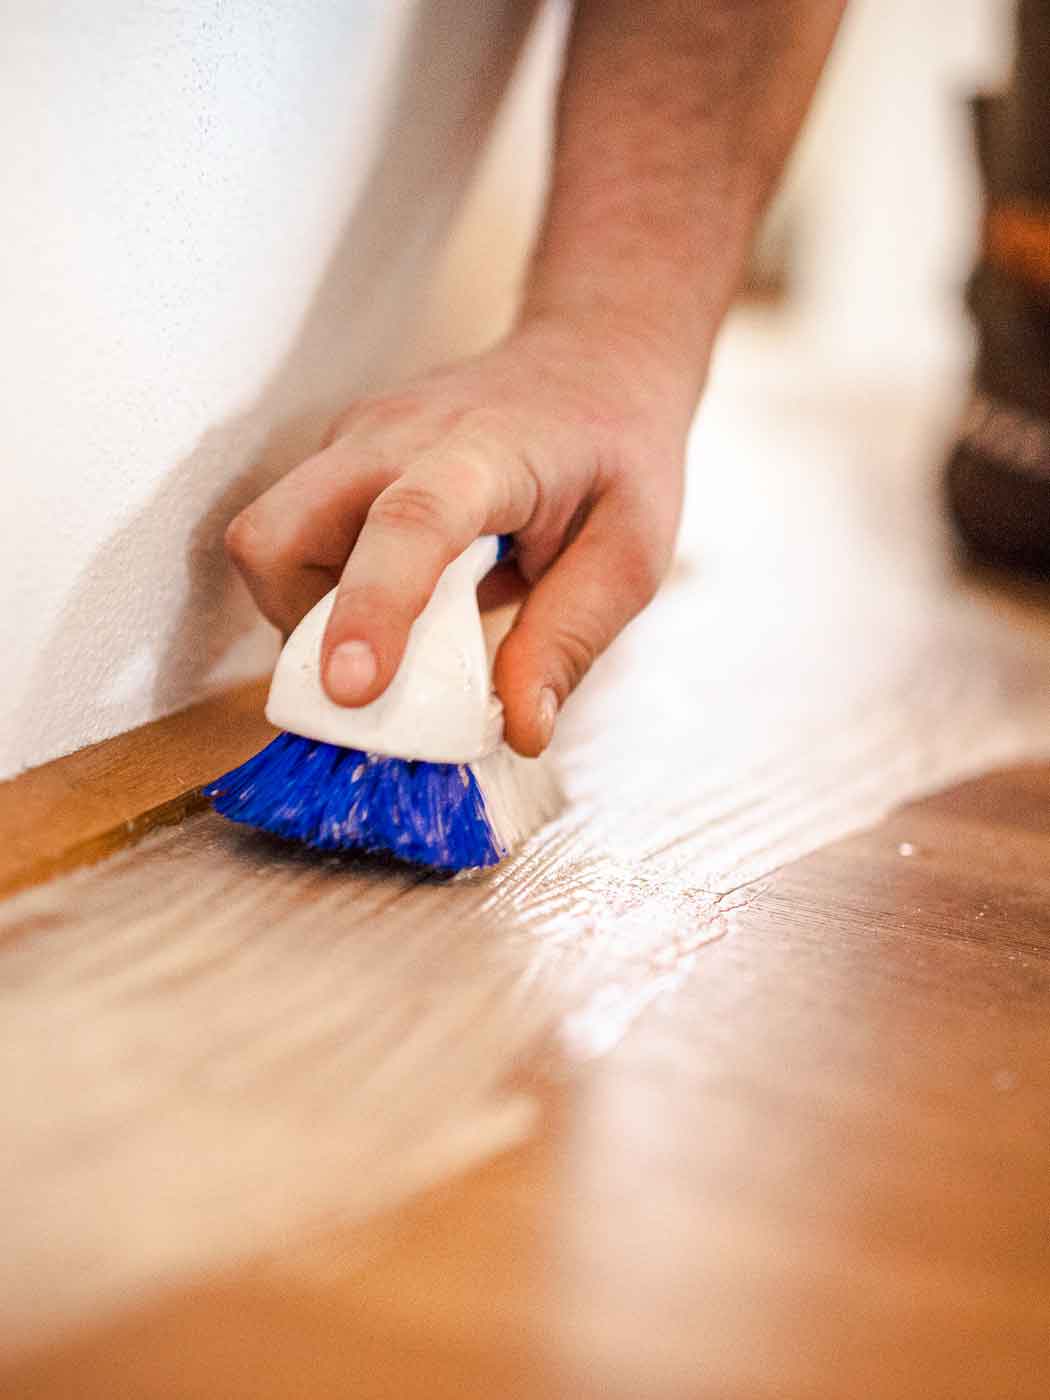 Bild zeigt Detailfoto beim Bürsten bzw. Sanieren eines Holzbodens.